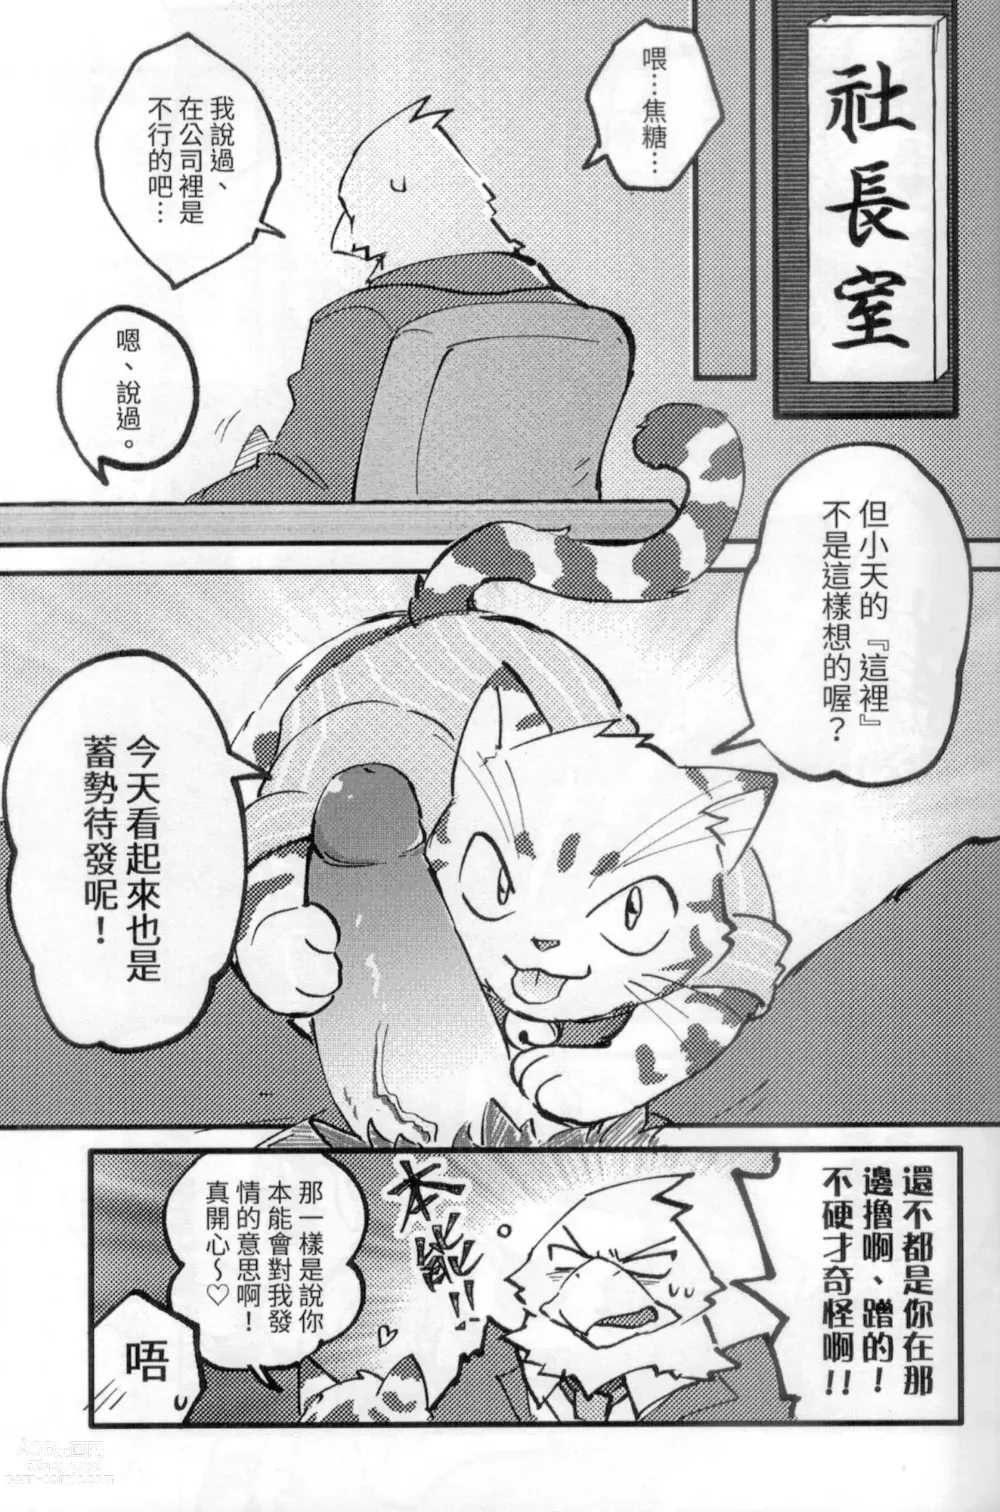 Page 4 of doujinshi 啊就脫掉吧